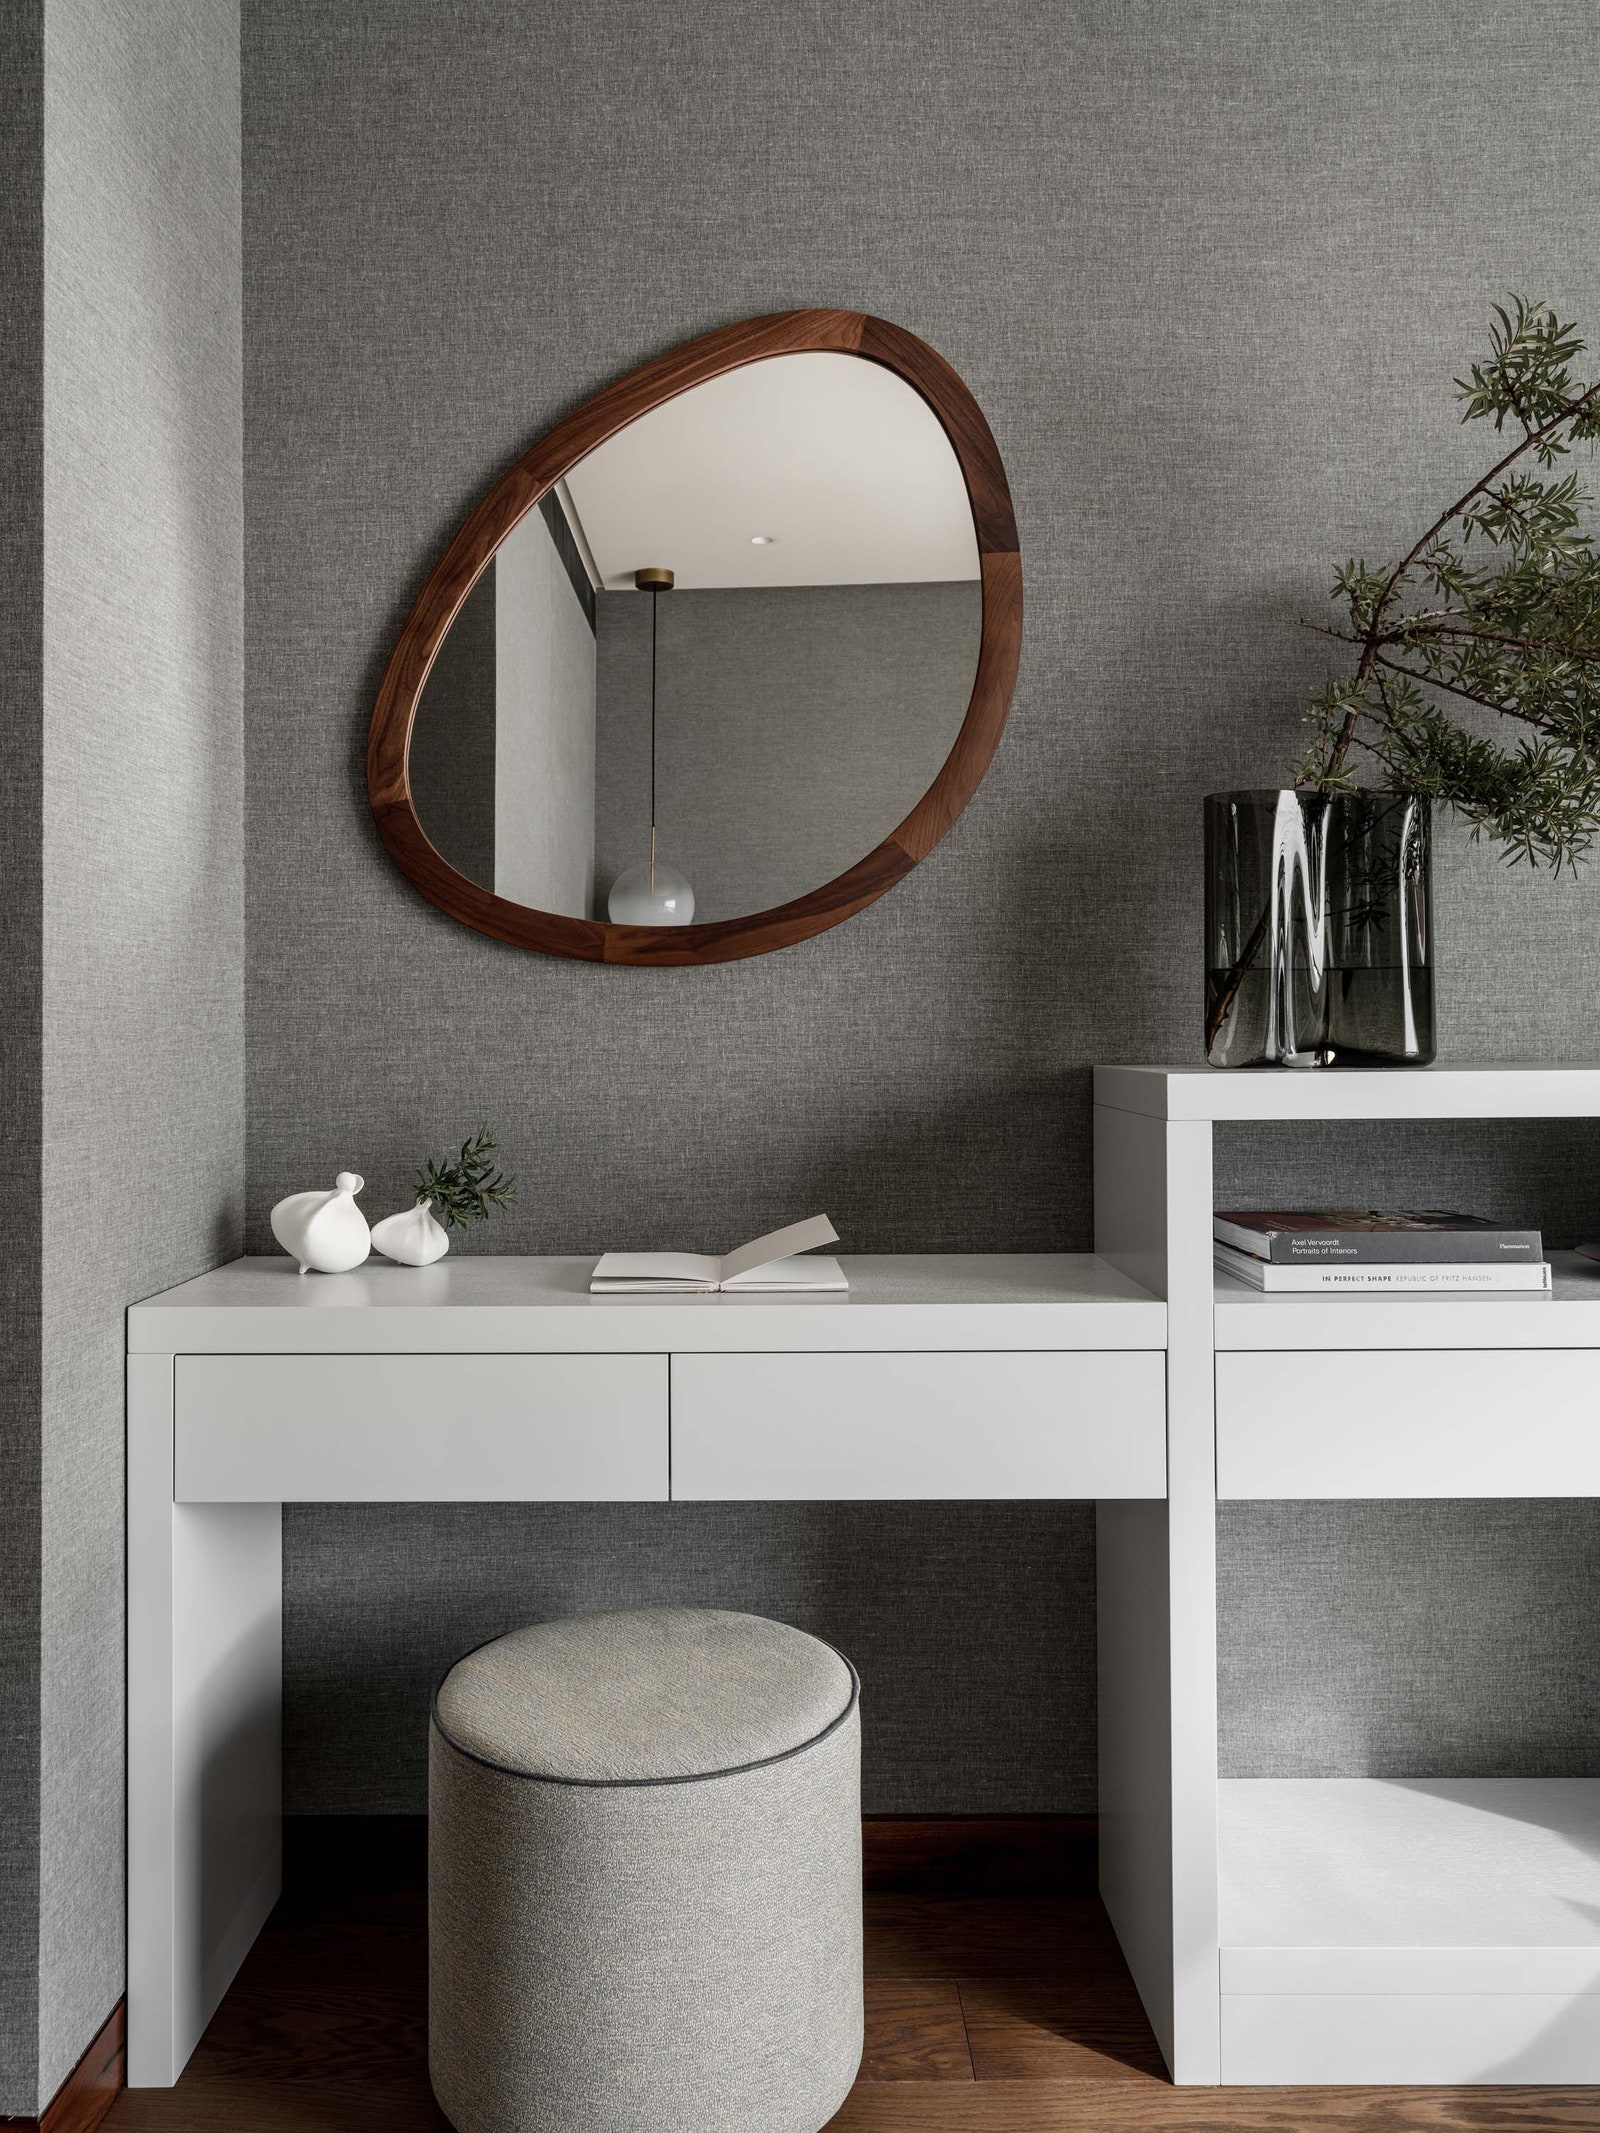 Фрагмент спальни. Зеркало Porada банкетка Pierre Frey консоль с туалетным столиком по эскизам дизайнера исполнены в...